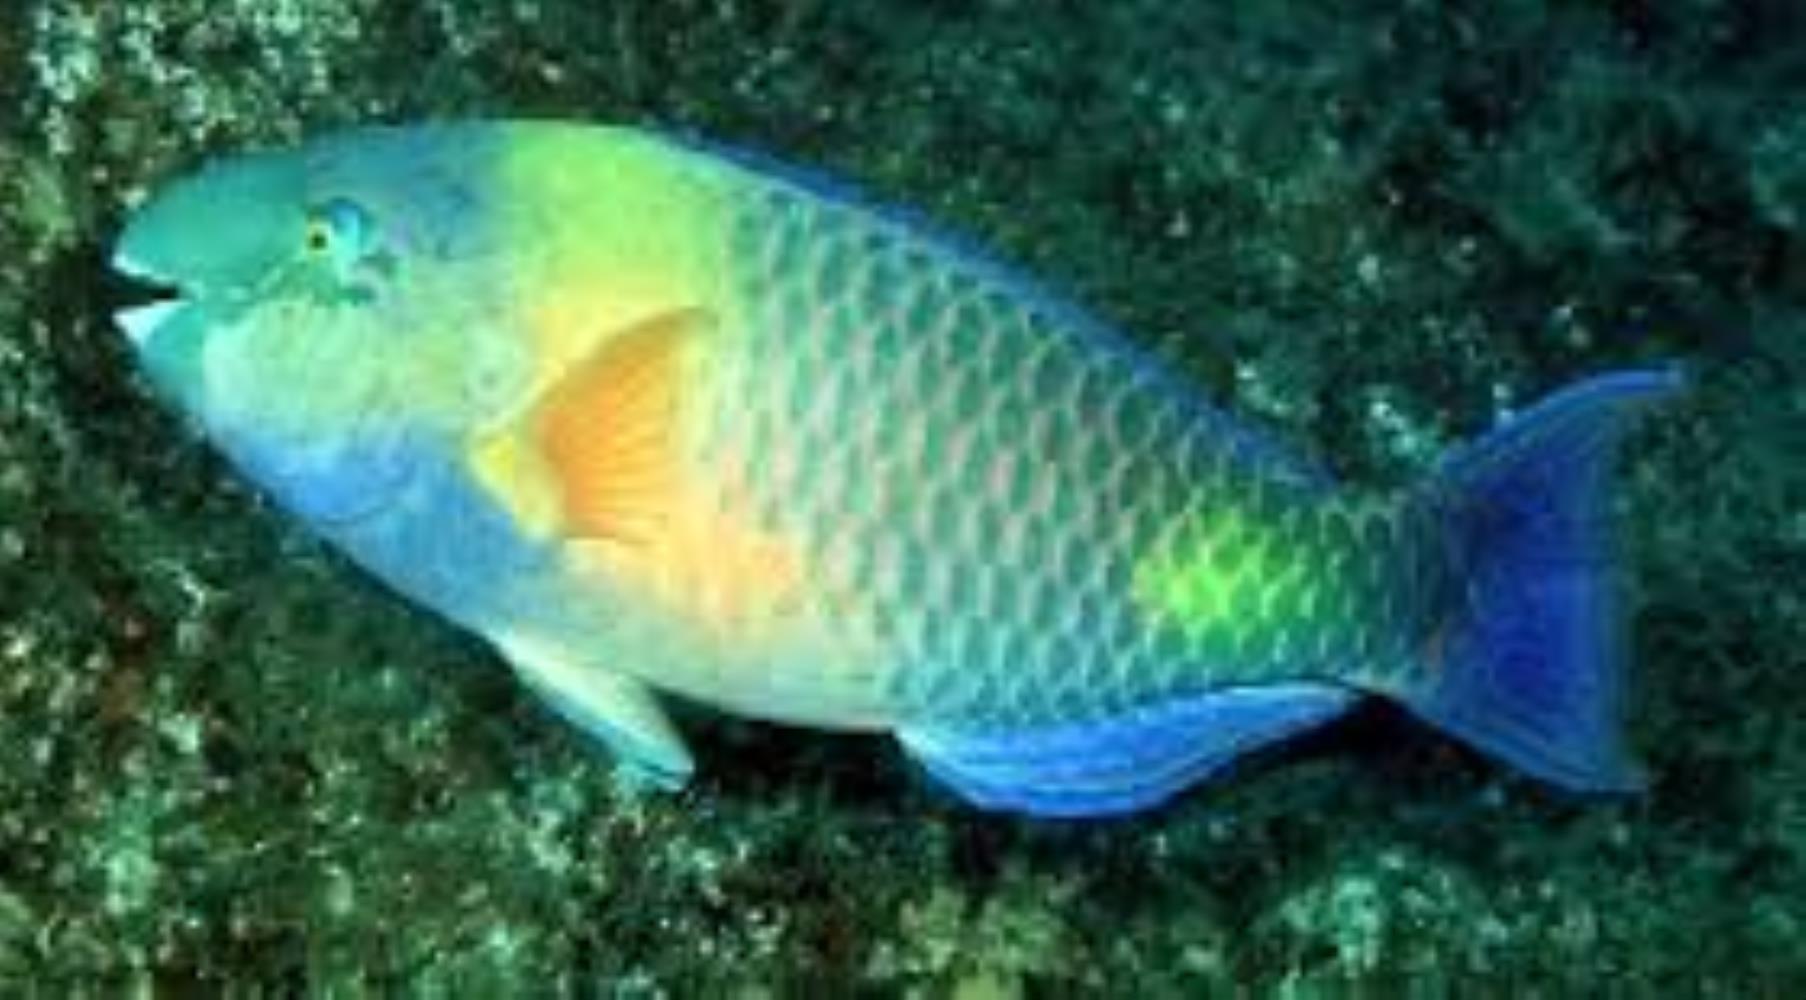 Dhofar Parrotfish